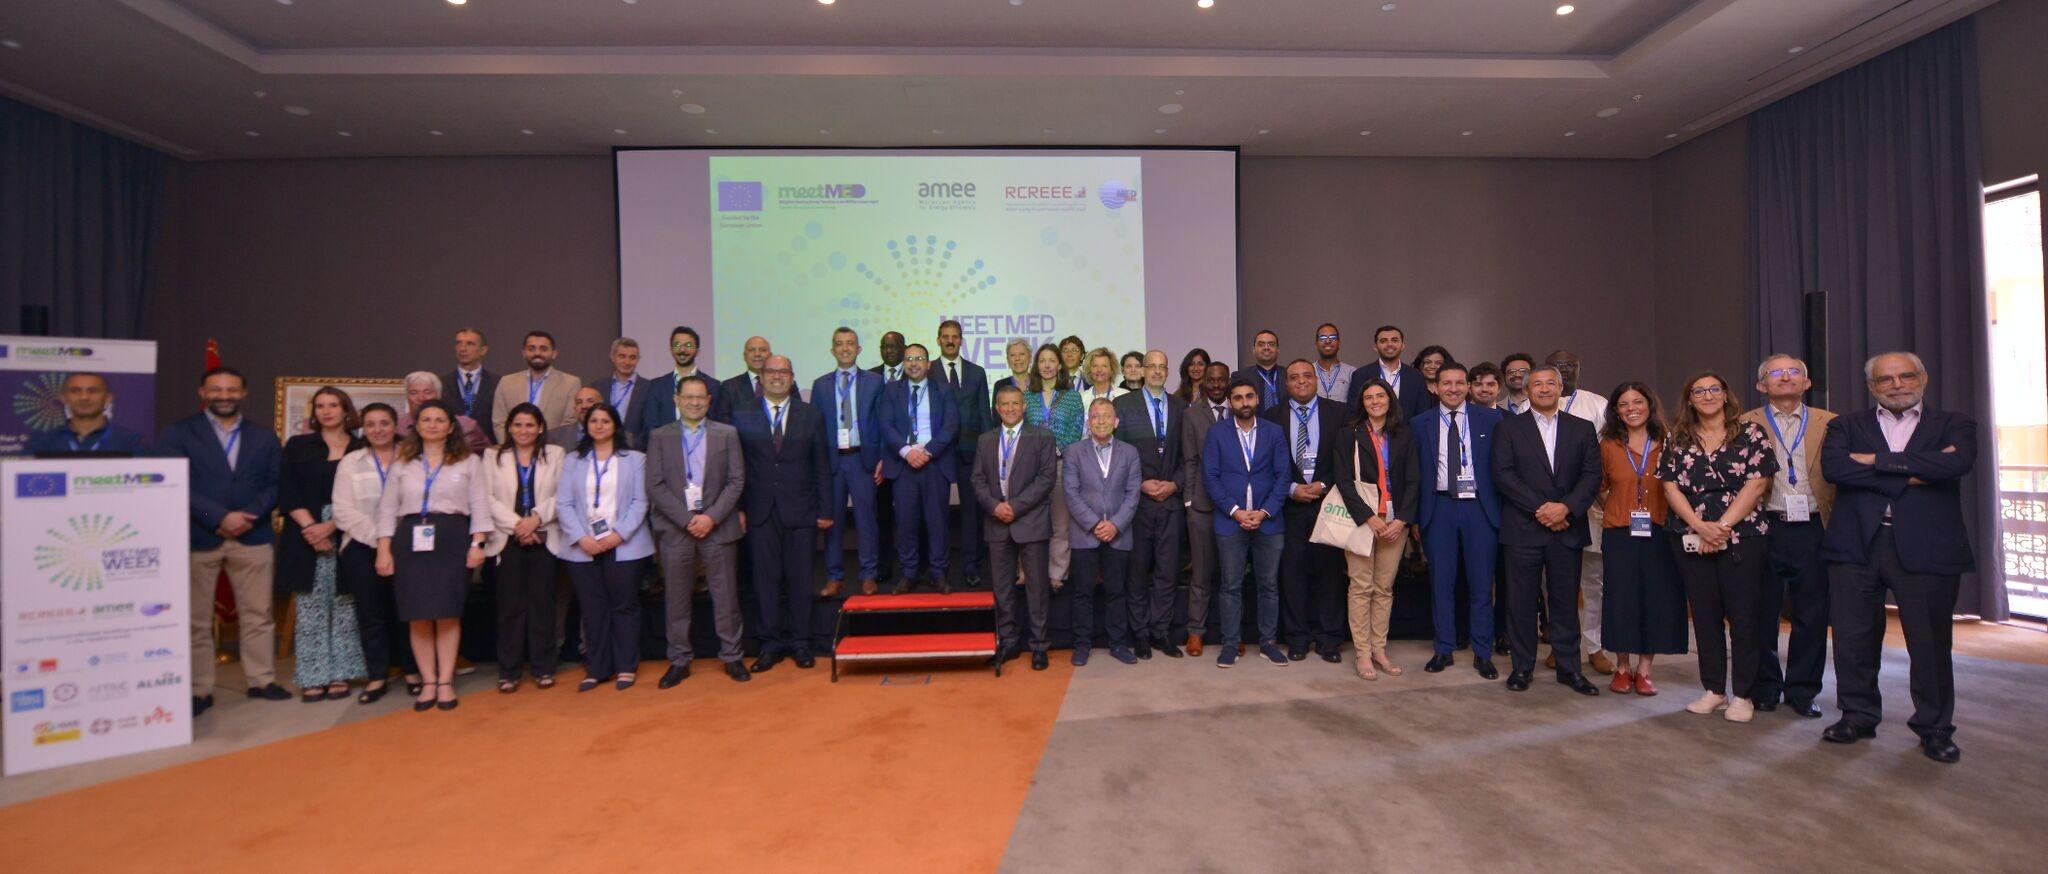 Una foto di gruppo dei partecipante alla seconda edizione della meetMED Week a tenutasi a Marrakech in Marocco dal 9 all’11 maggio 2023